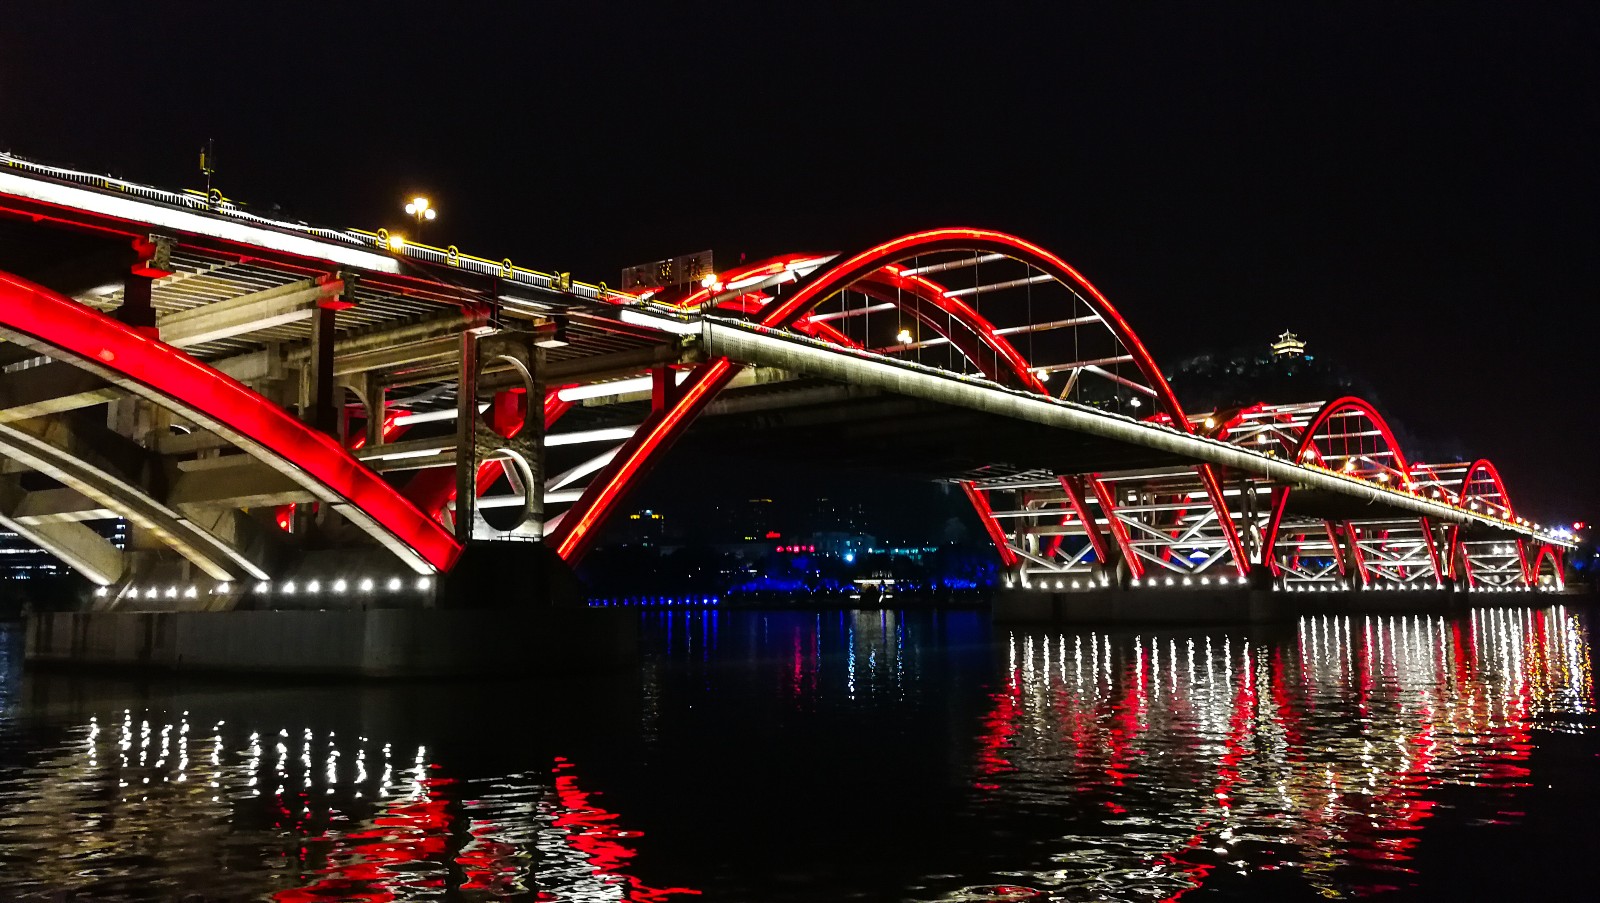 柳州文惠桥夜景图片